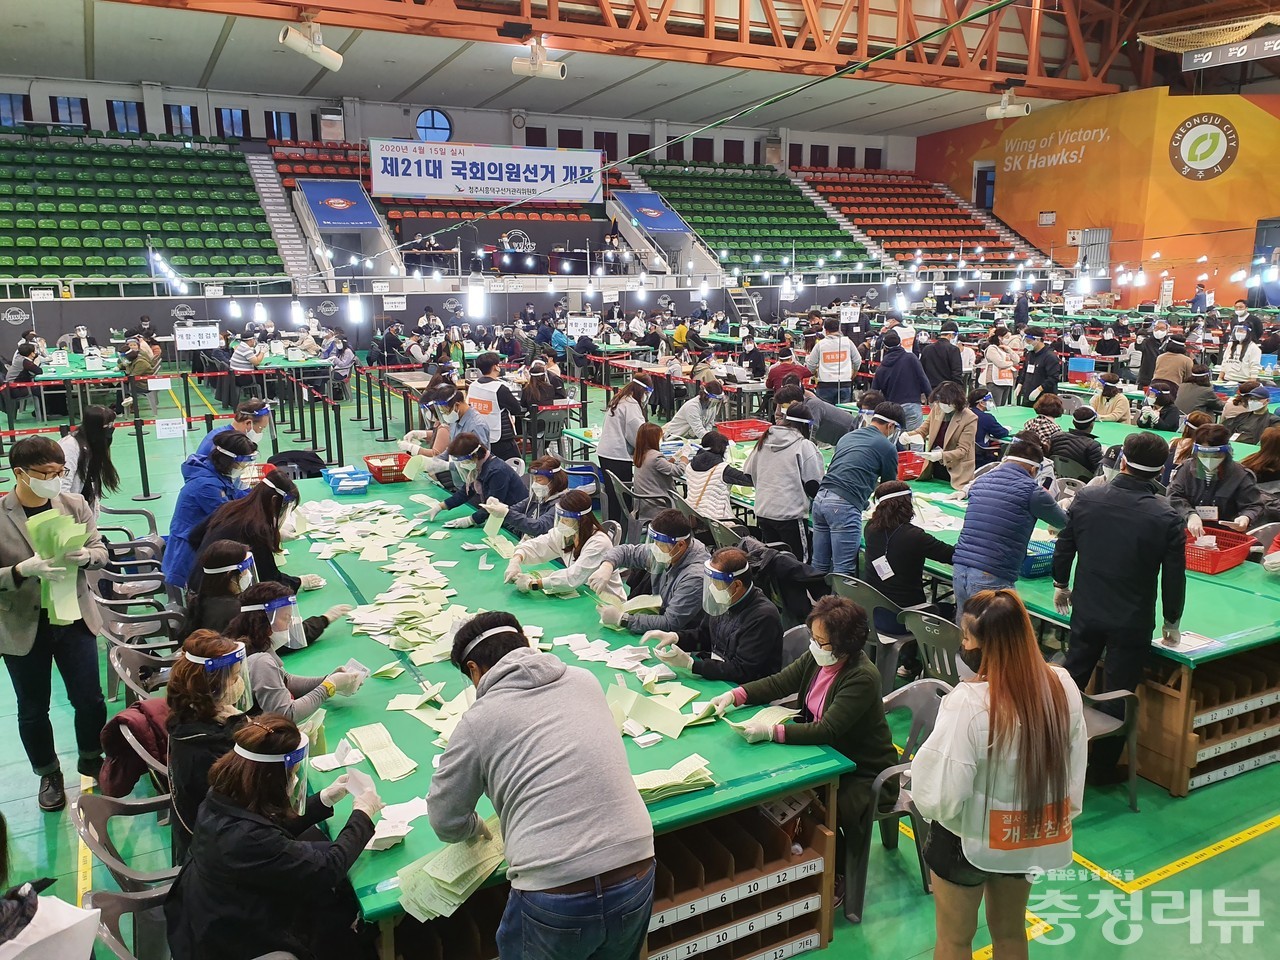 15일 제21대 국회의원 선거 개표소가 차려진 청주 국민생활관에서 개표사무원들이 투표용지를 분류하고 있다. /육성준 기자